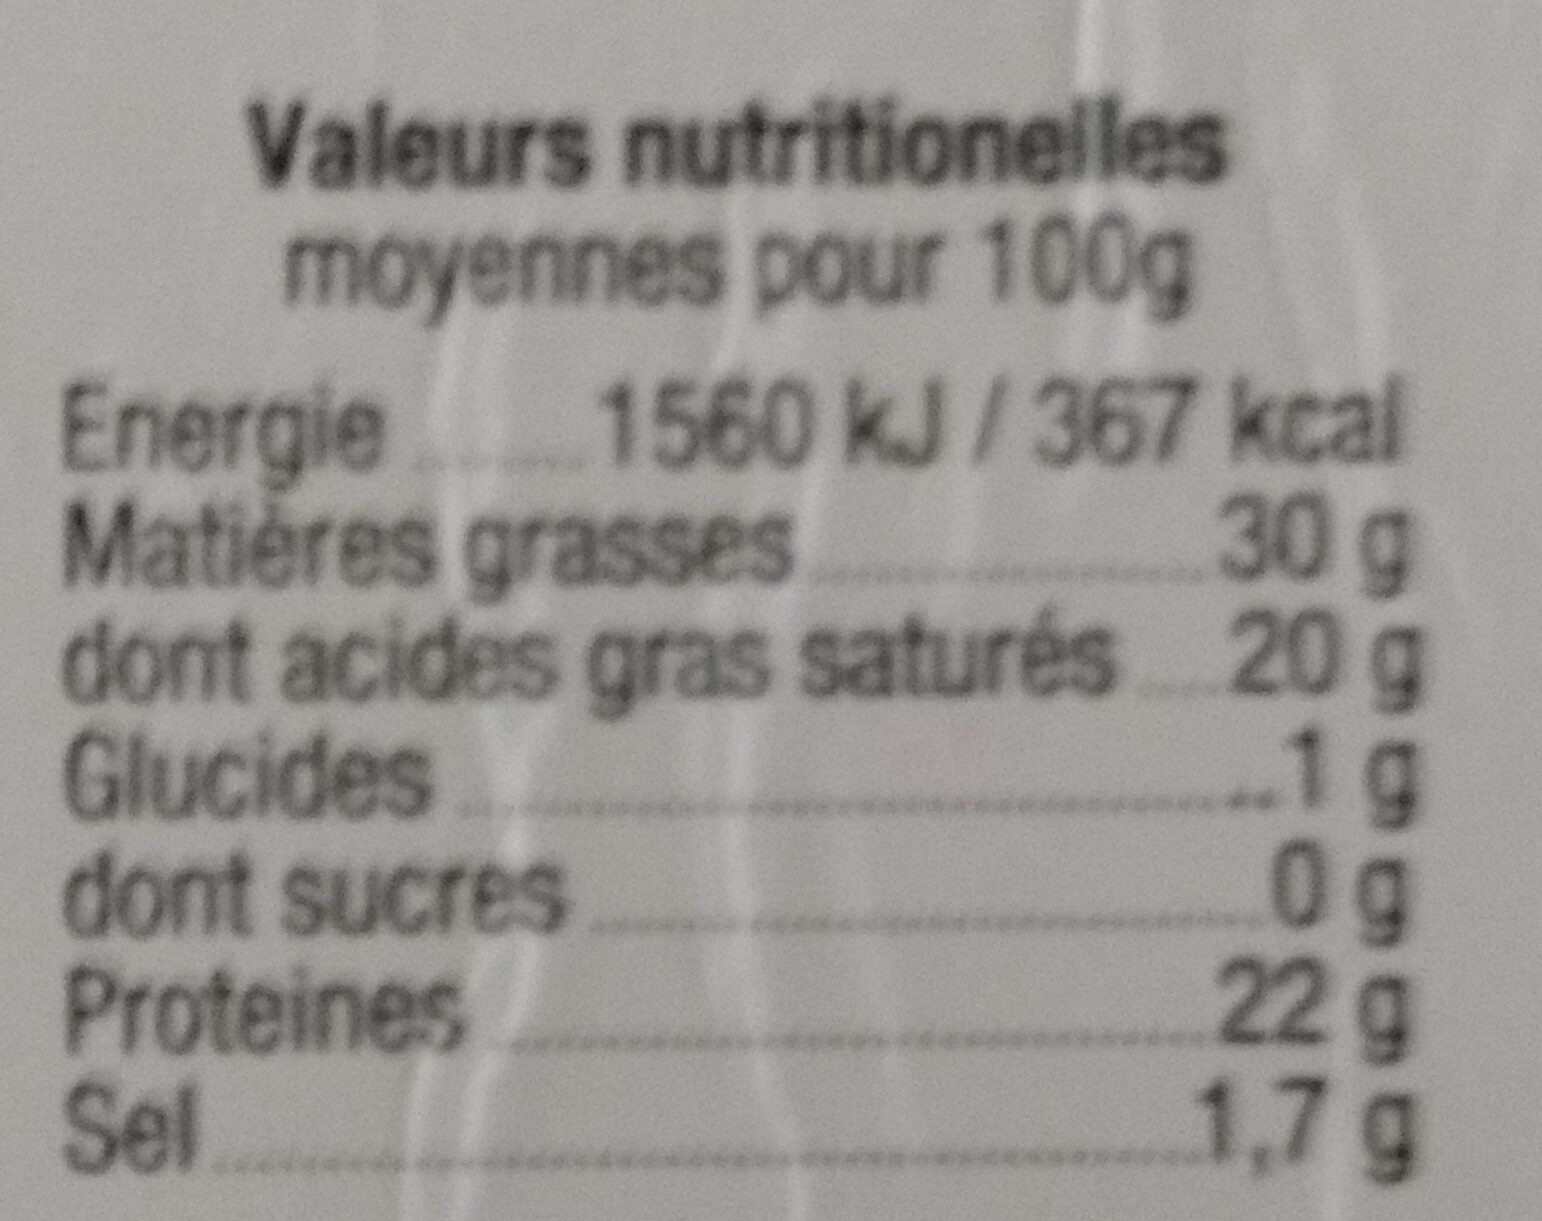 Raclette au lait cru - Tableau nutritionnel